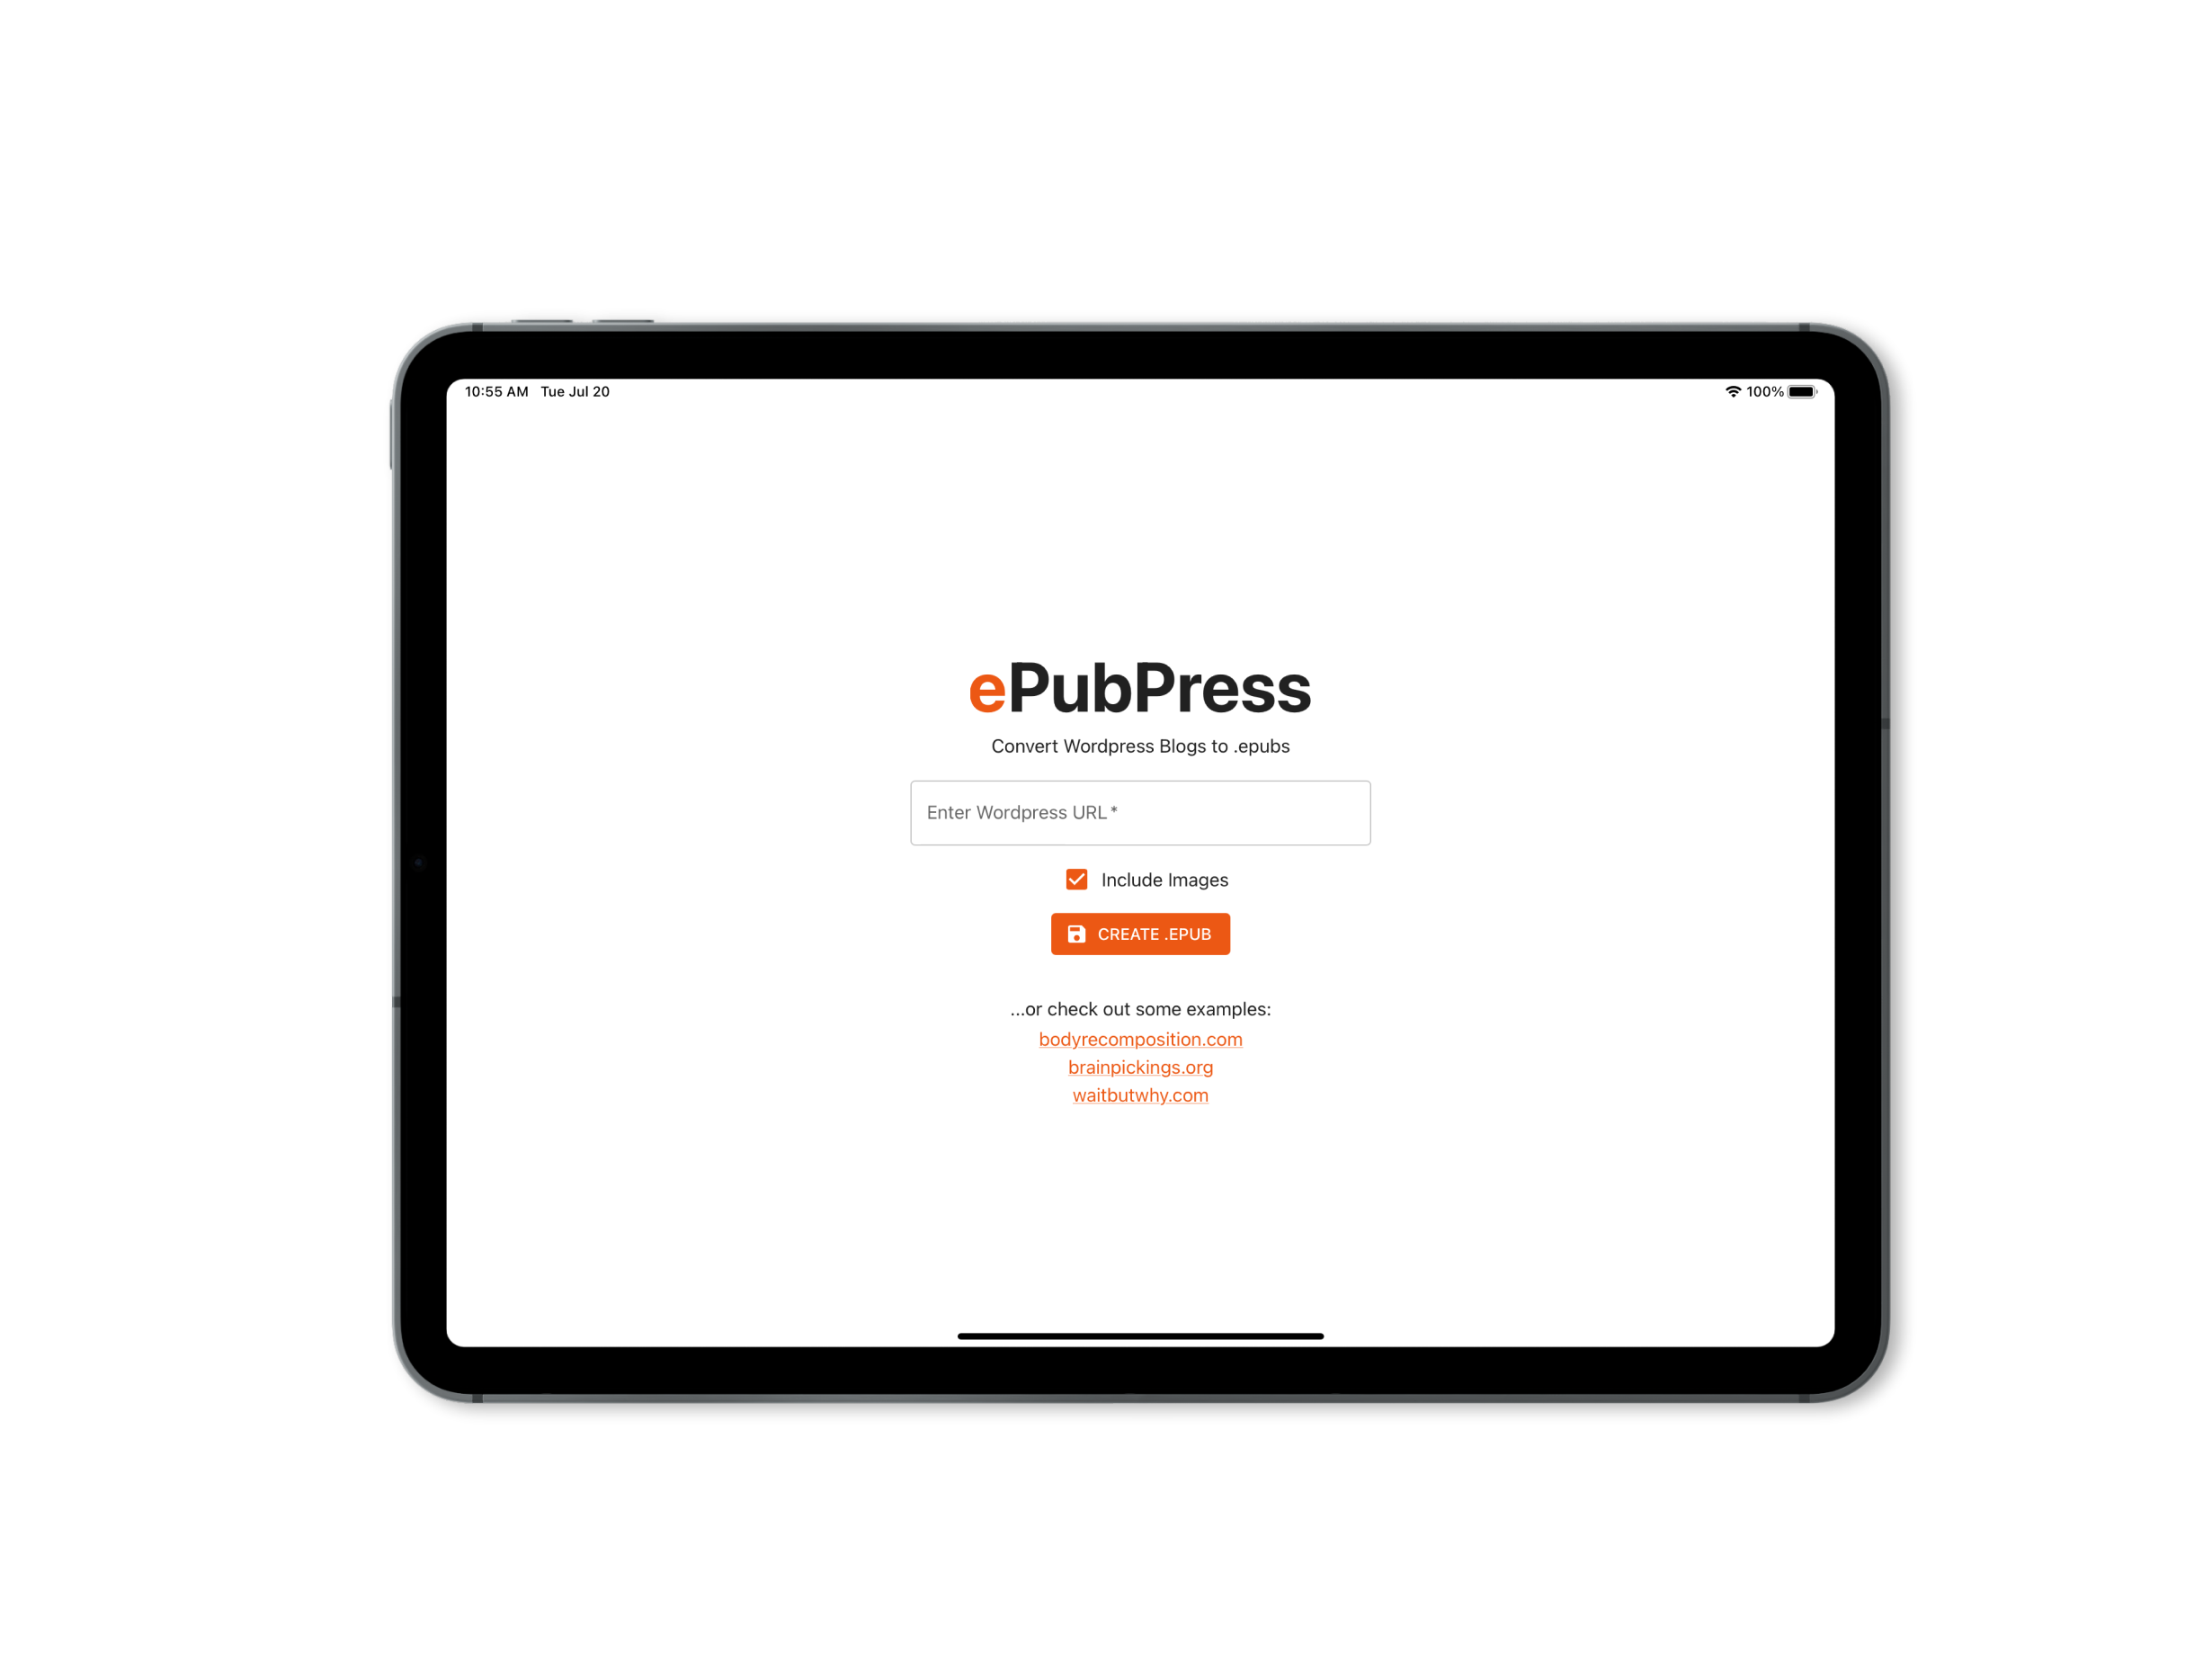 ePubPress